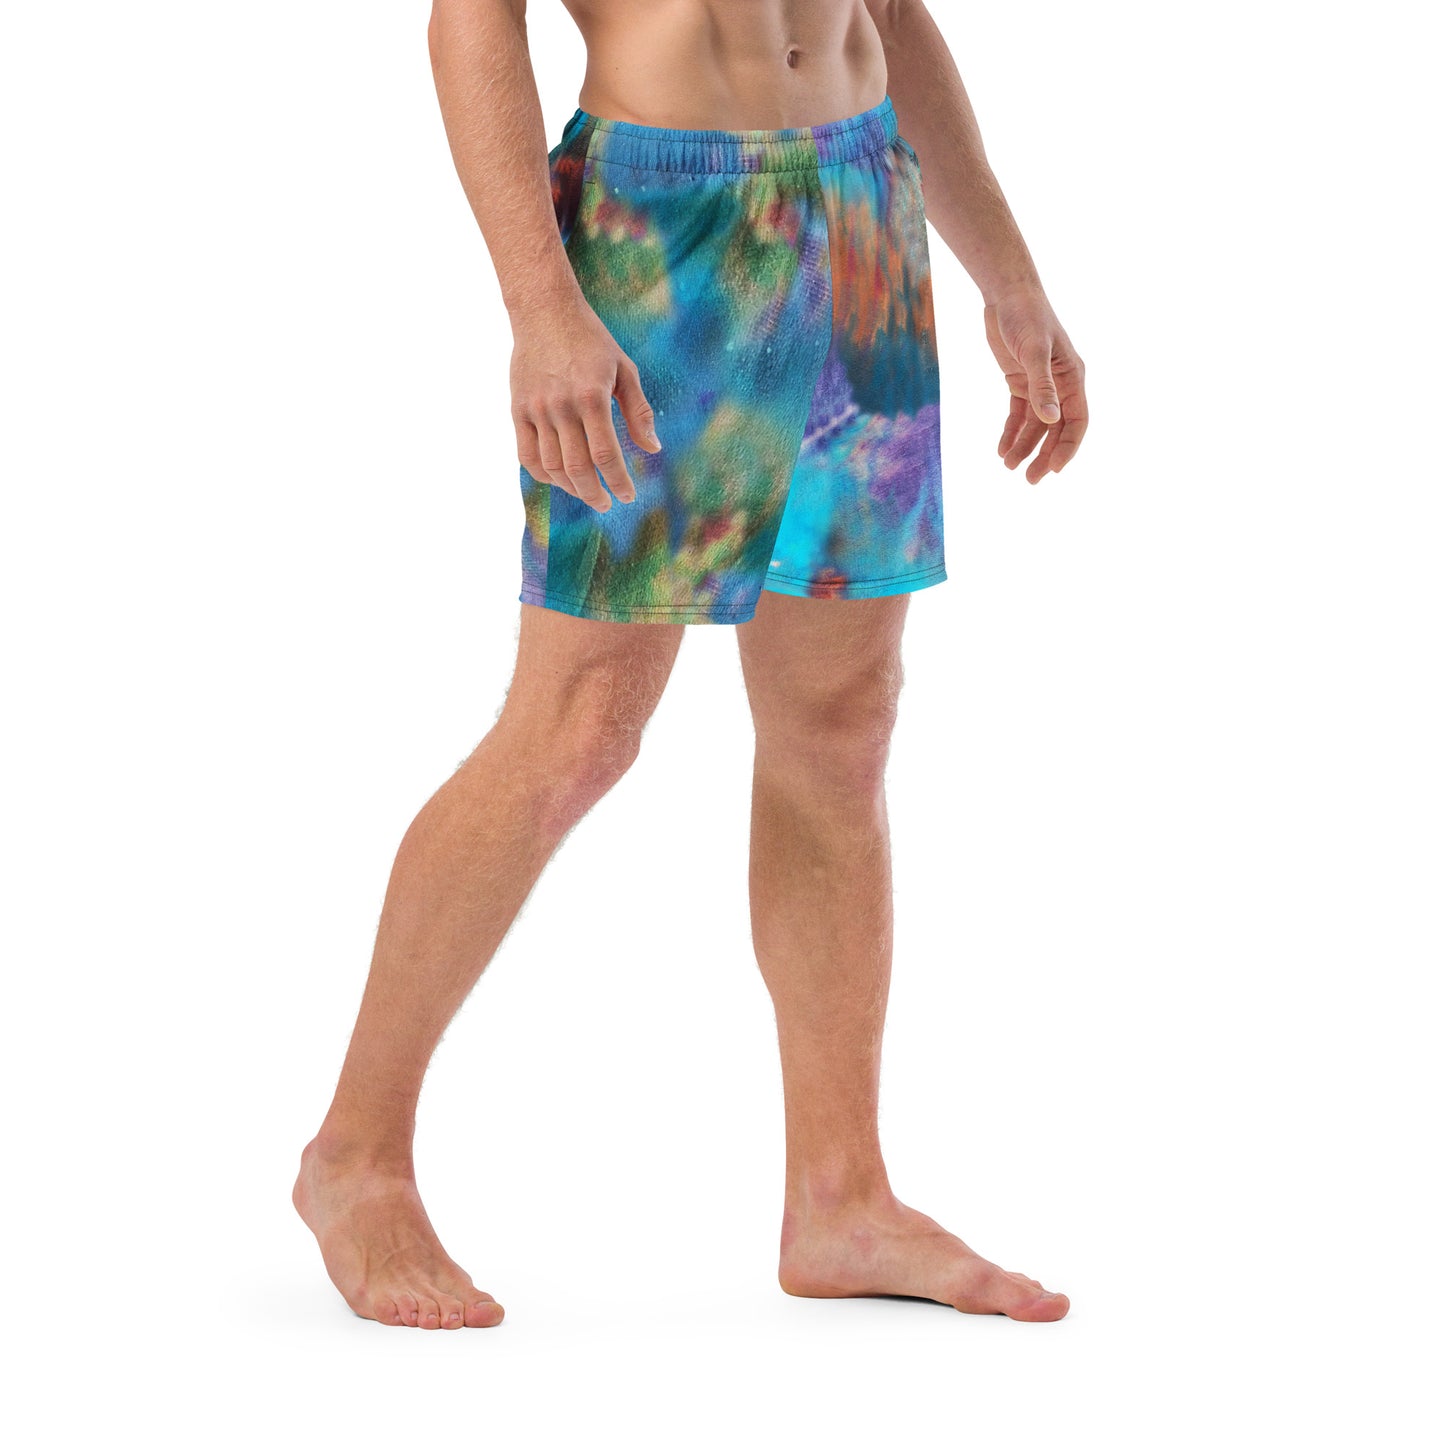 Jerry Garcia swim trunks